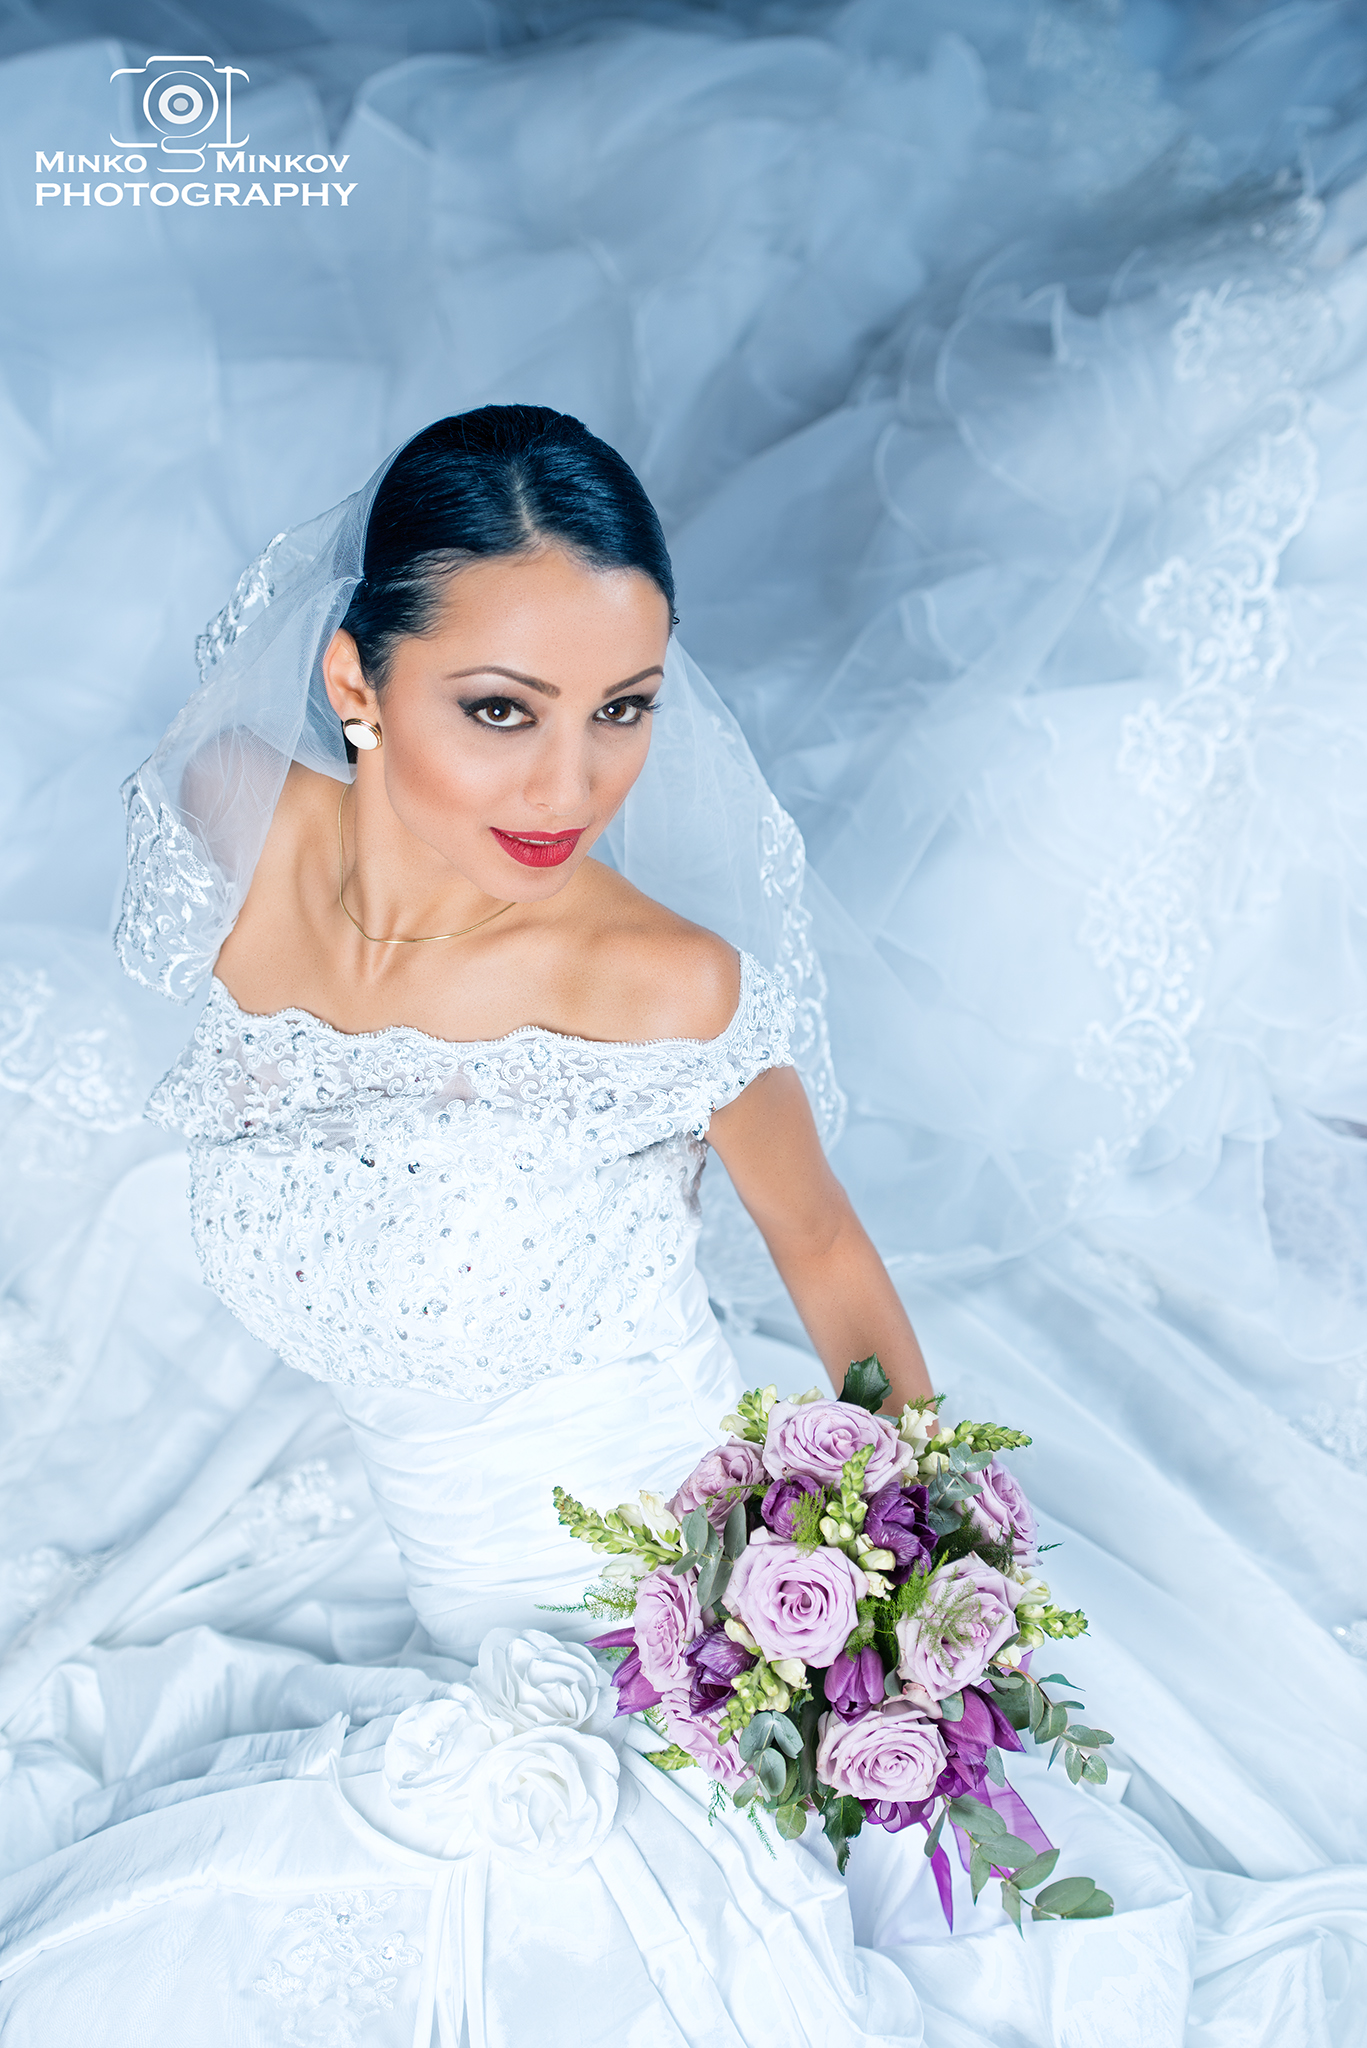 Minko Minkov Women White Dress Brides Frock Flowers Bouquets 1367x2048